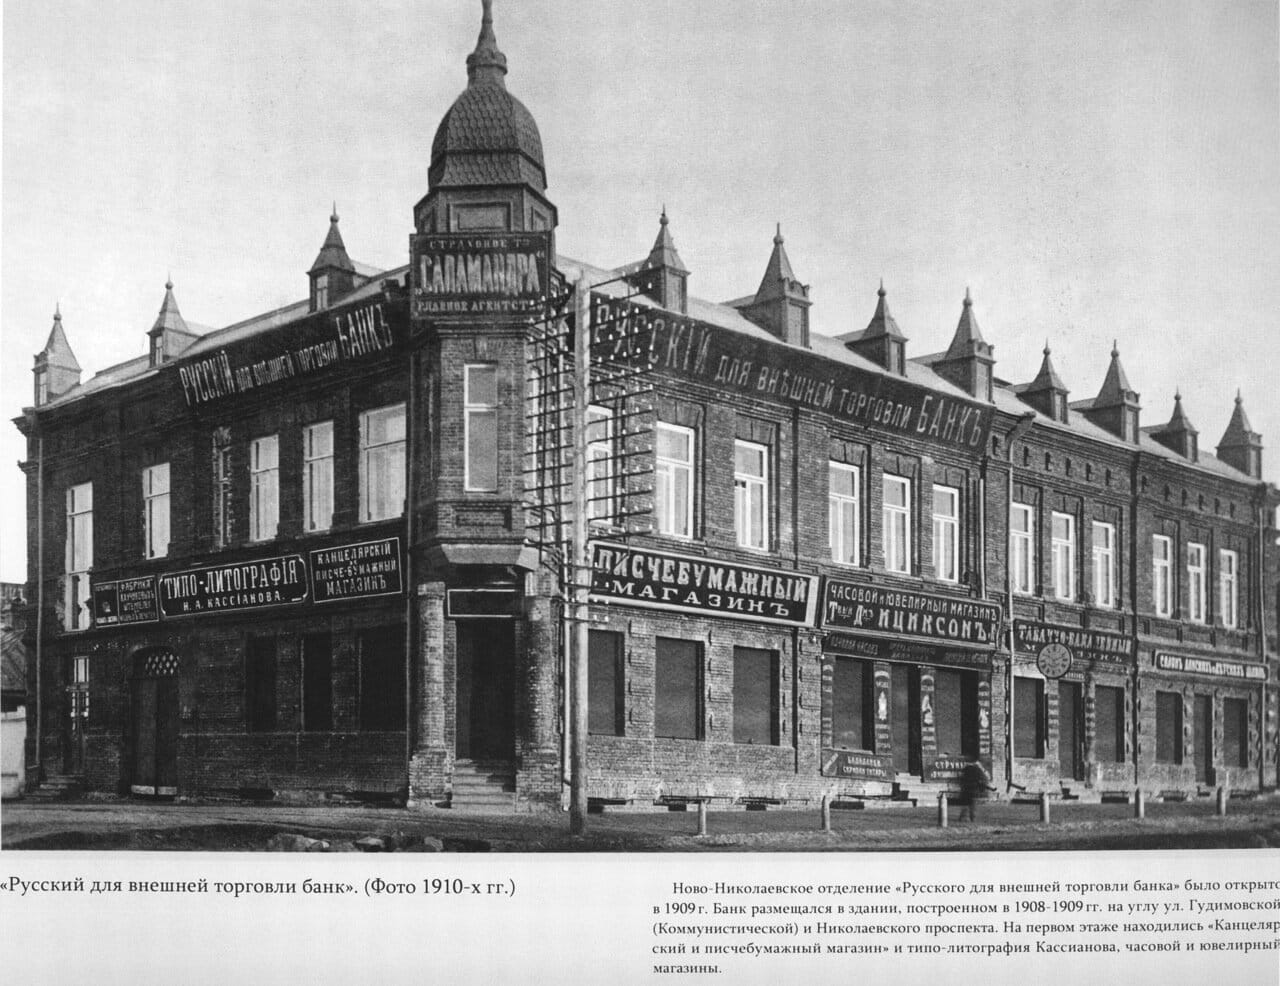 Русский для внешней торговли банк, 1910-е годы